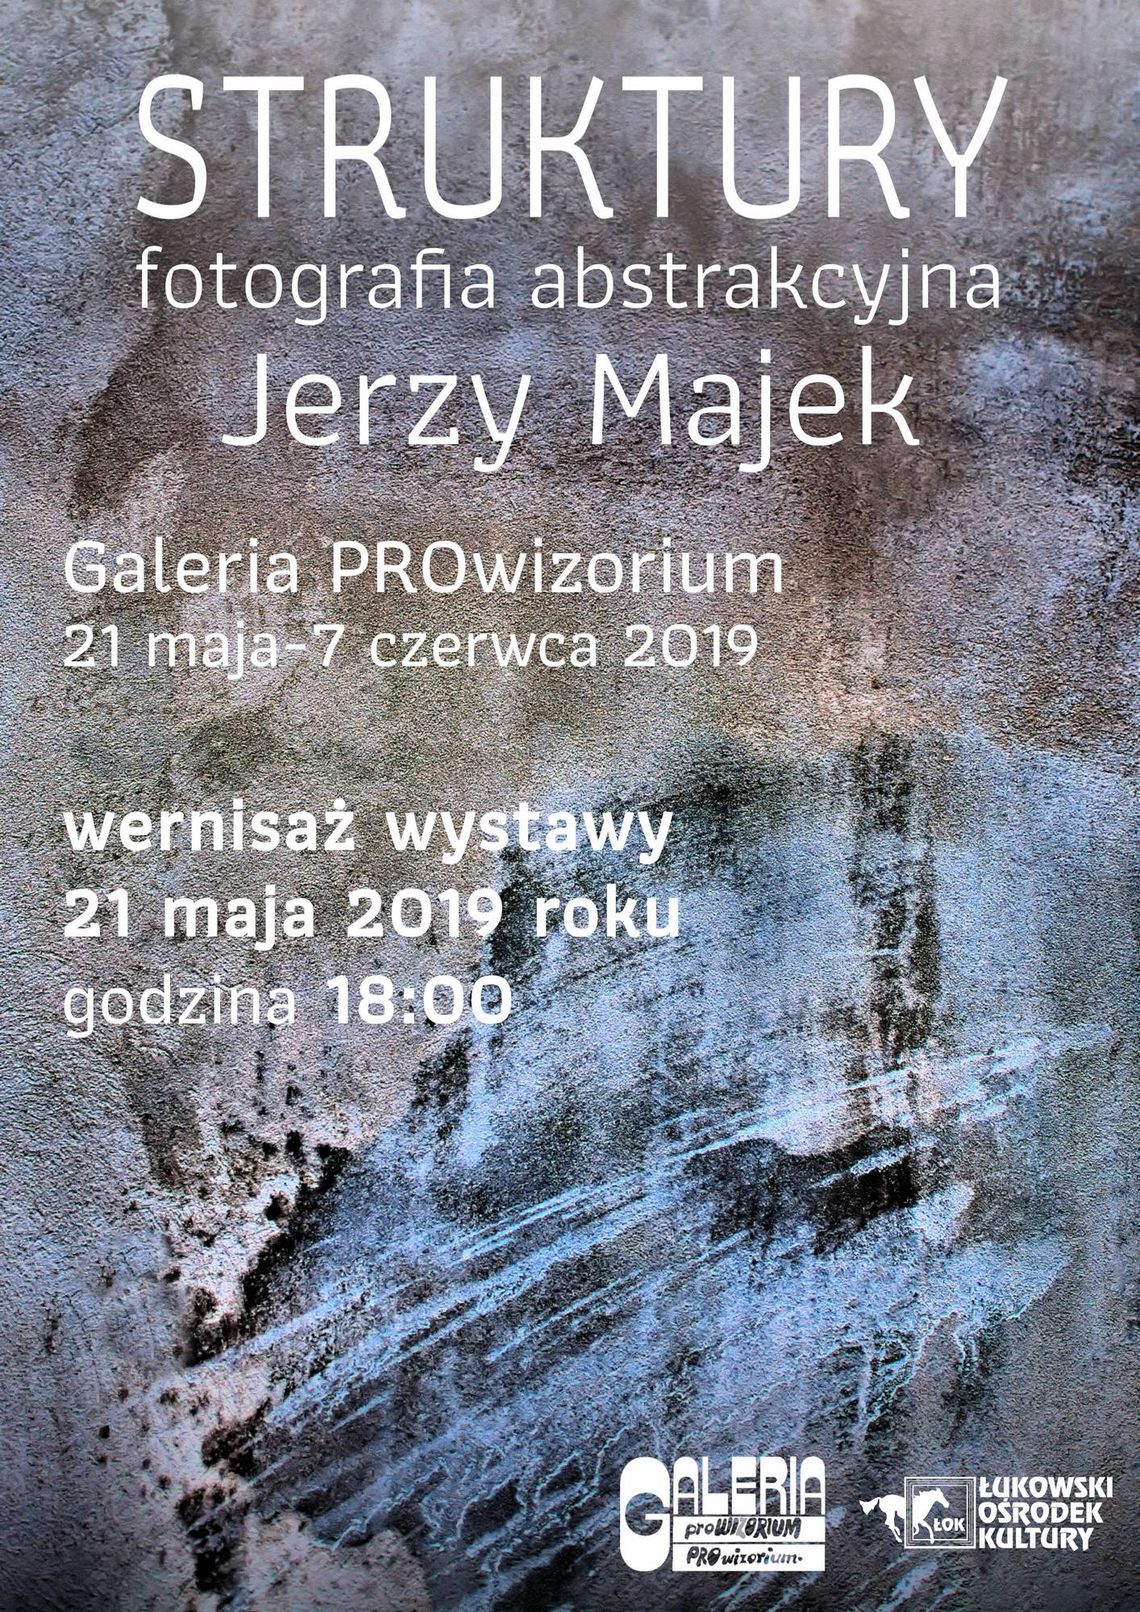 Wystawa fotografii abstrakcyjnej "Struktury" Jerzego Majka w Galerii PROwizorium /21 maja-7 czerwca 2019